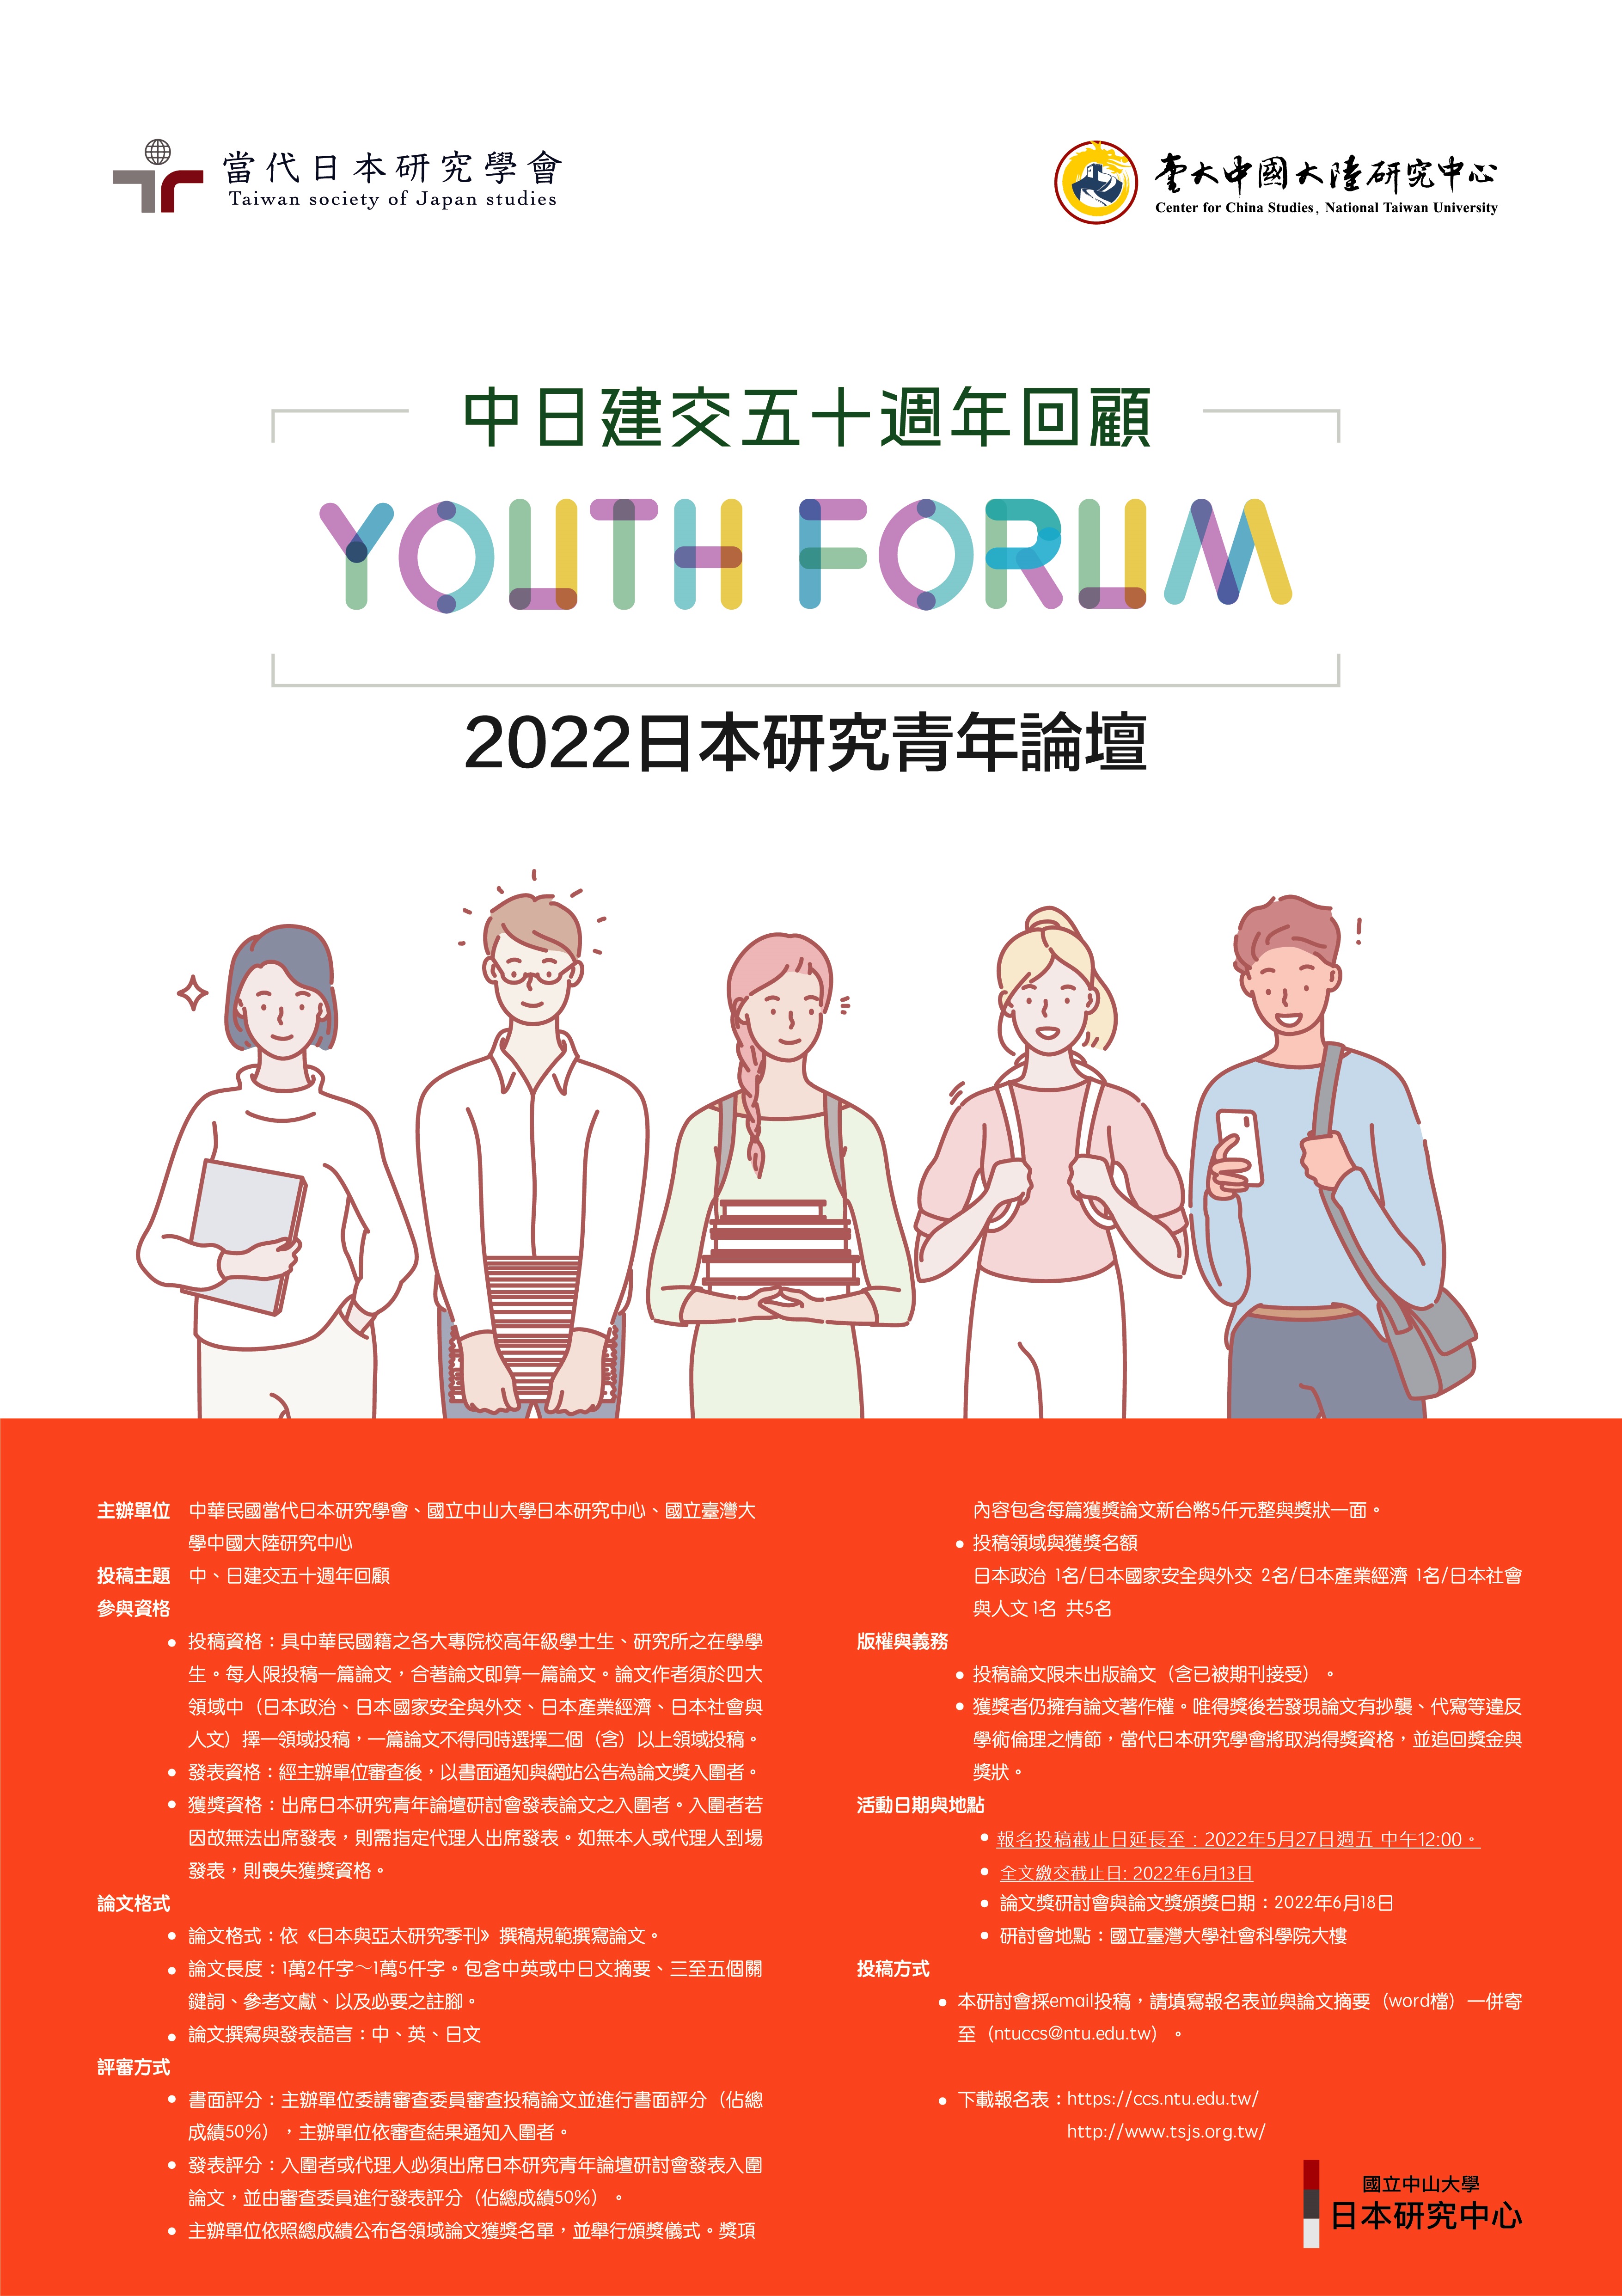 (代轉)【研討會徵稿】2022年第八屆日本研究青年論壇研討會